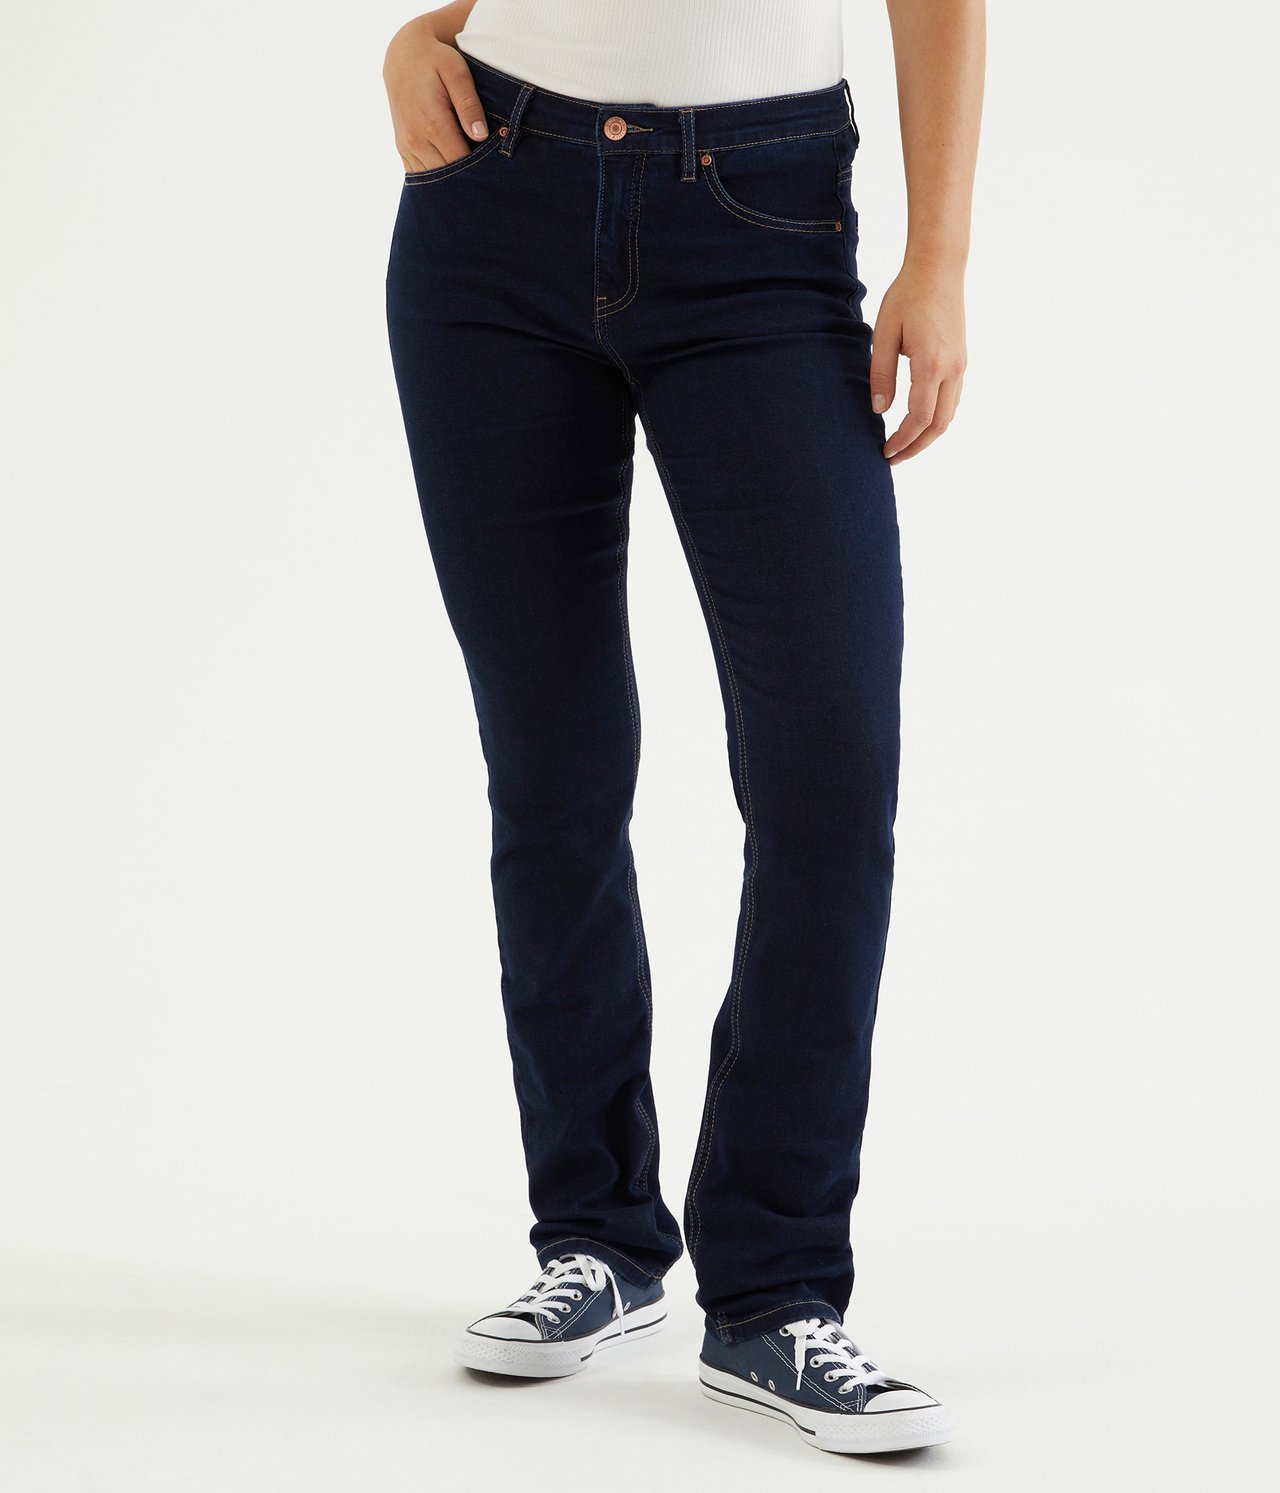 Alice straight jeans extra long leg - Tumma denimi - 3